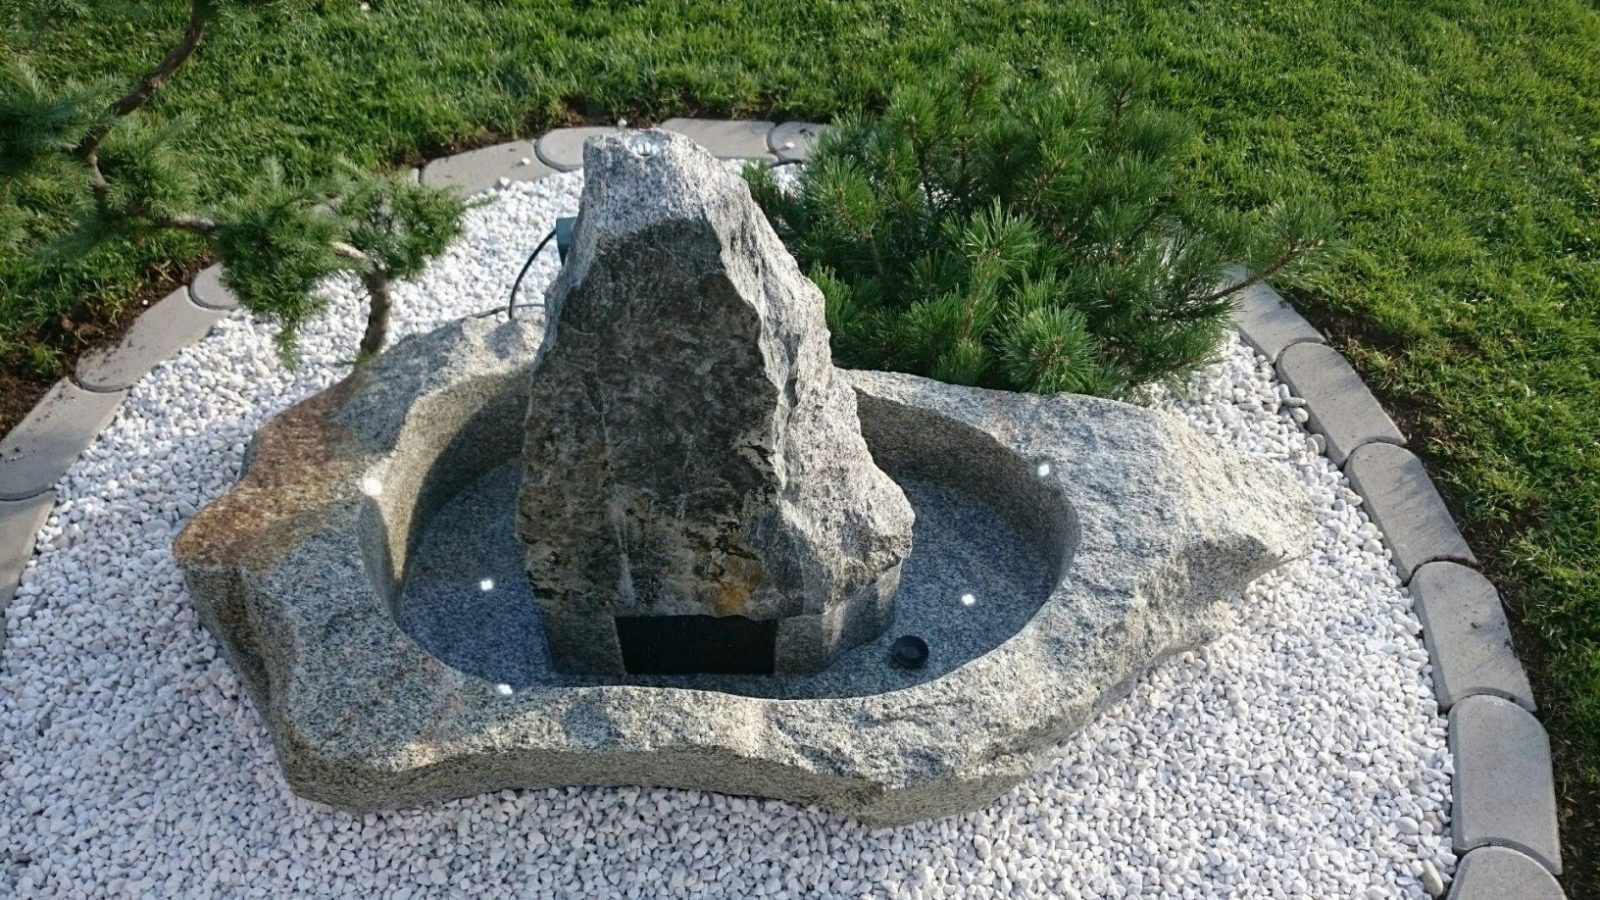 Springbrunnen Aus Granit  Unikat  Youtube von Springbrunnen Garten Selber Bauen Bild